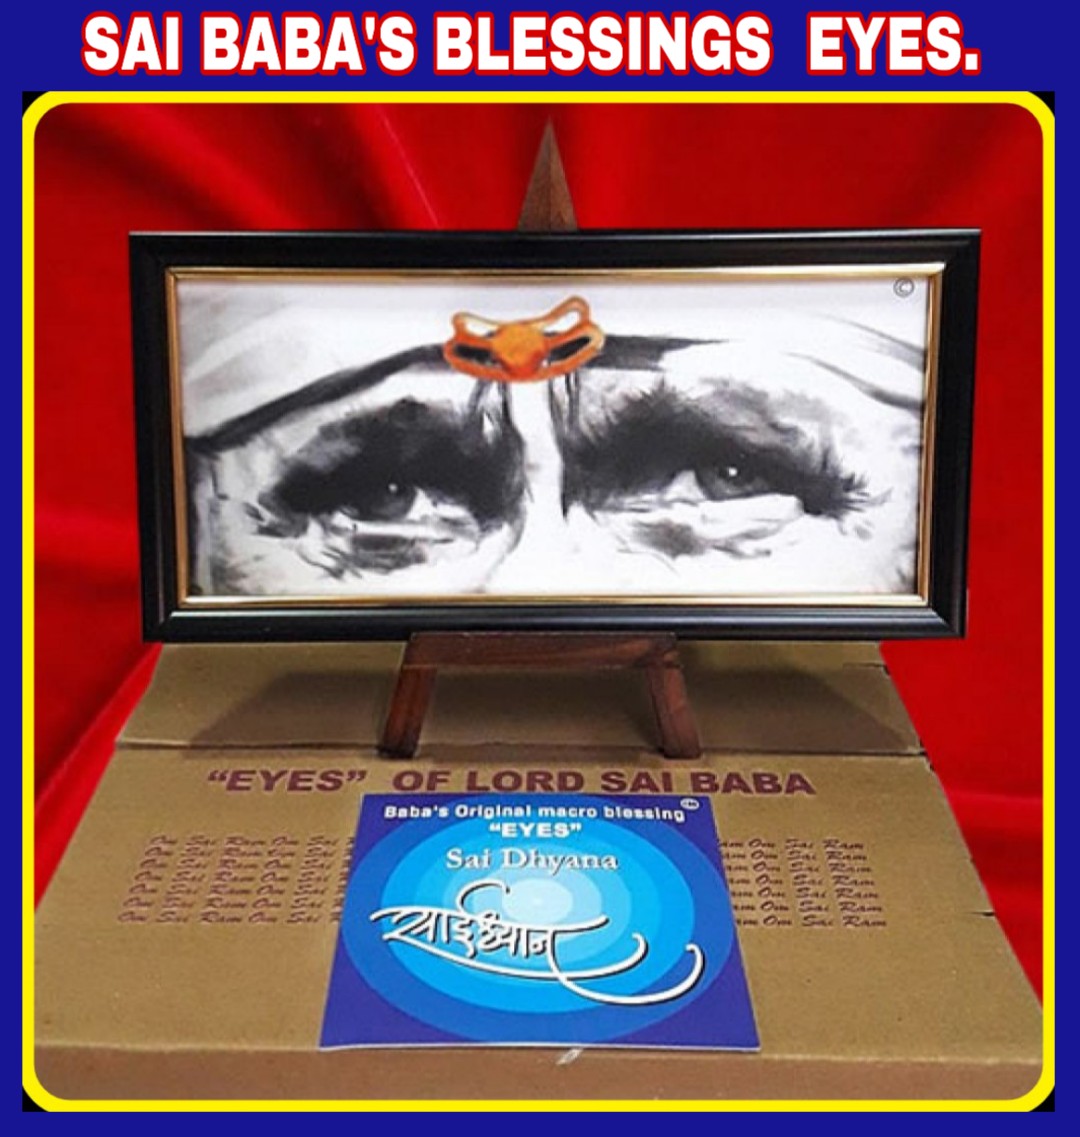 Blessing Eyes of Shirdi Sai